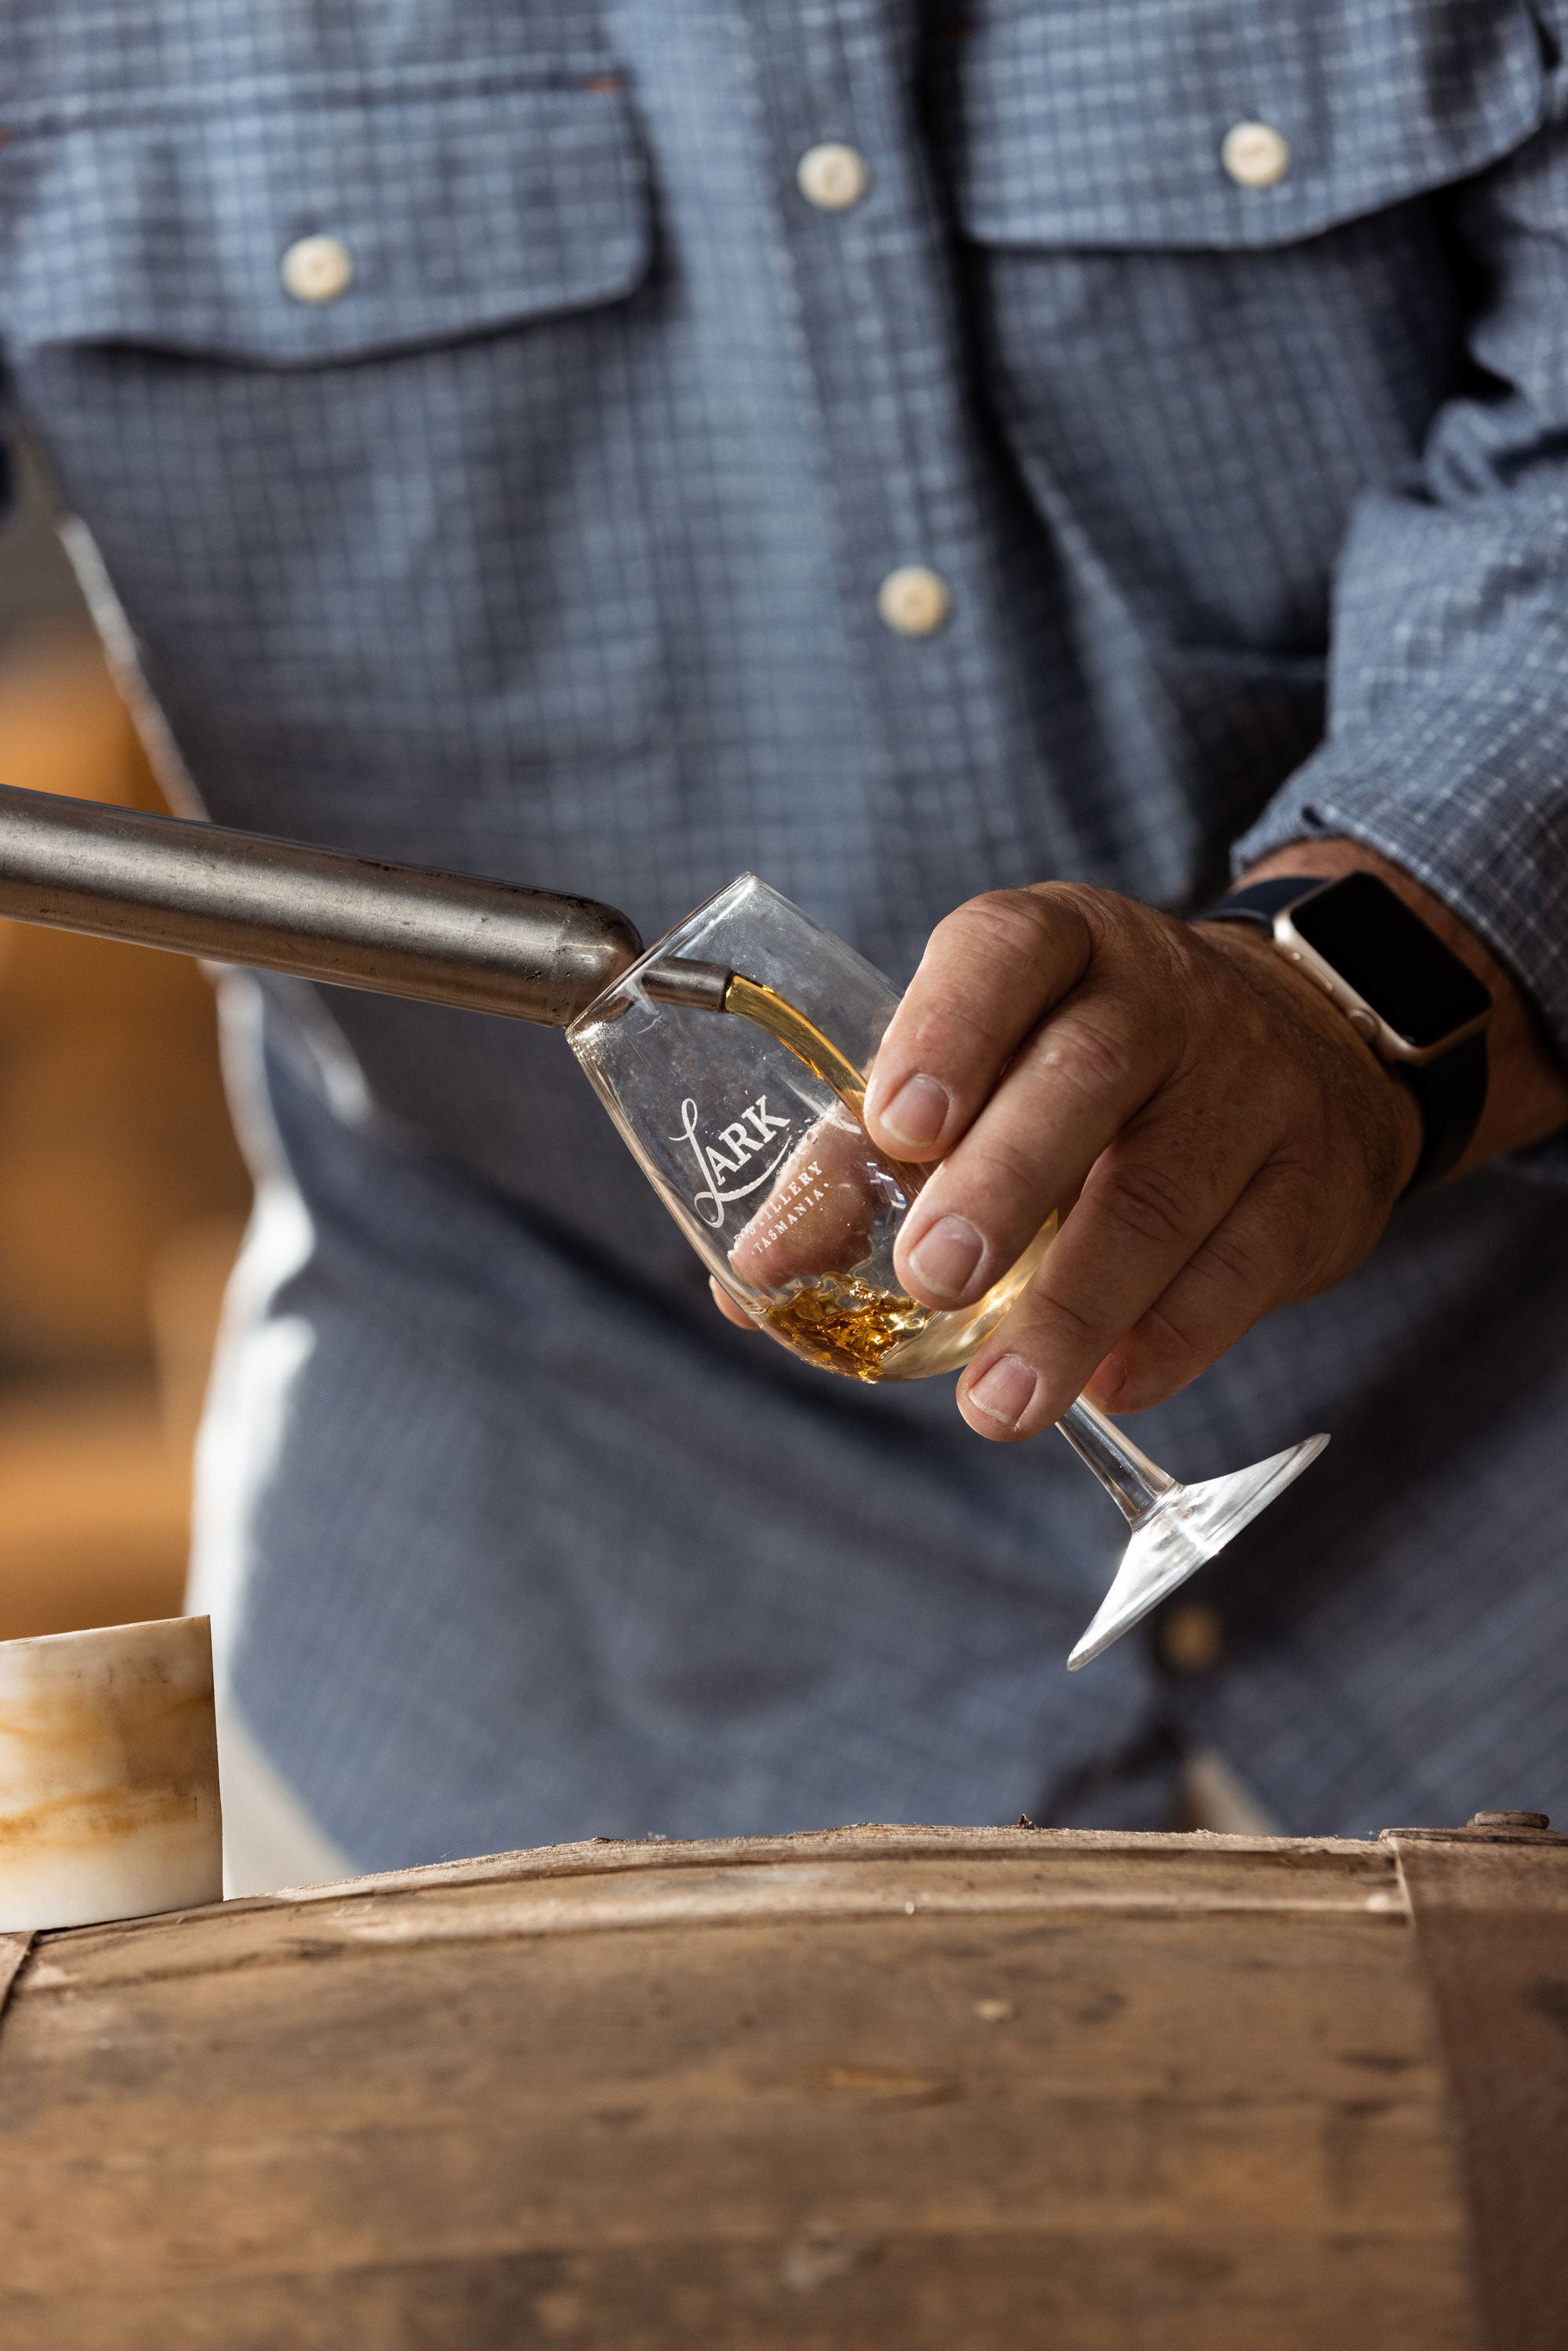 How Lark Became The Best Whisky In Australia